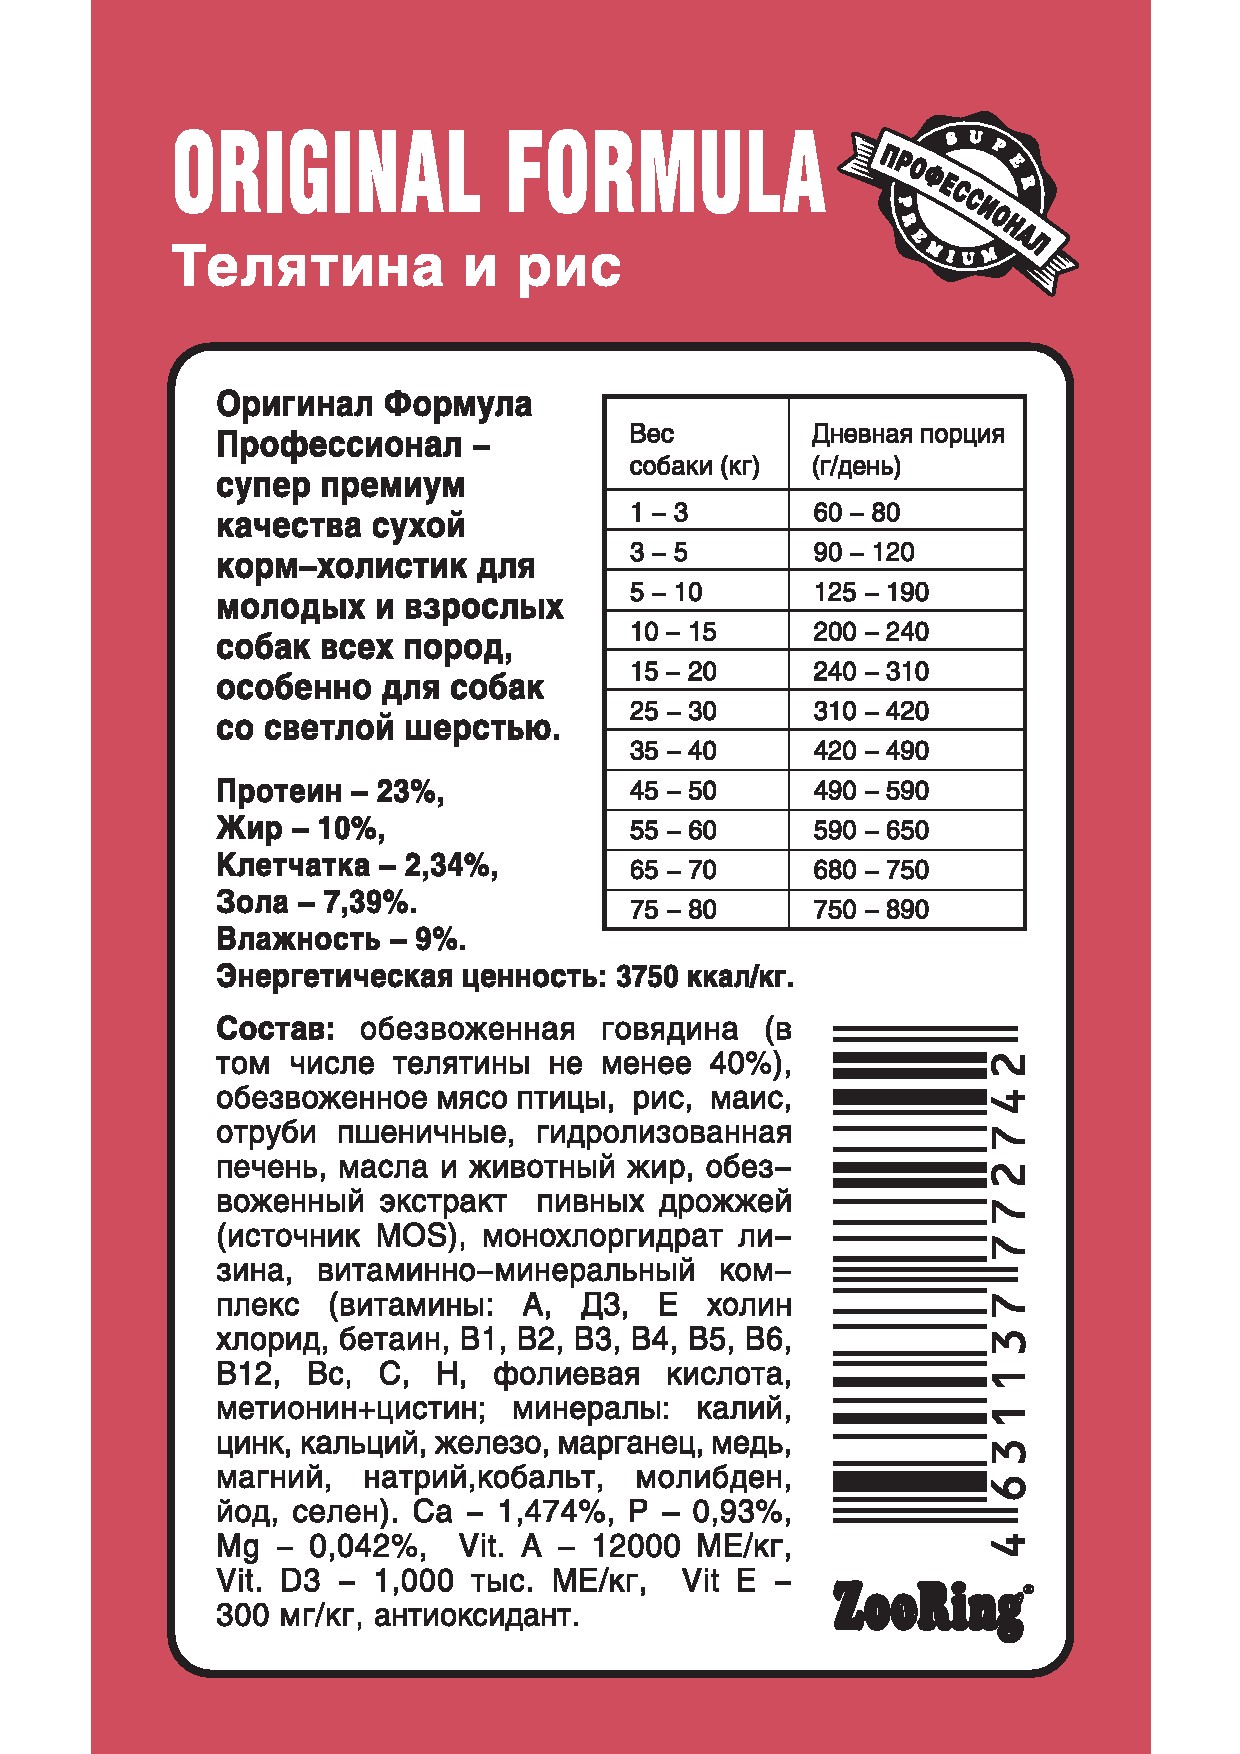 Корм ZooRing для собак Original Formula Телятина рис 10кг антиаллергенная формула для собак со светлой шерстью